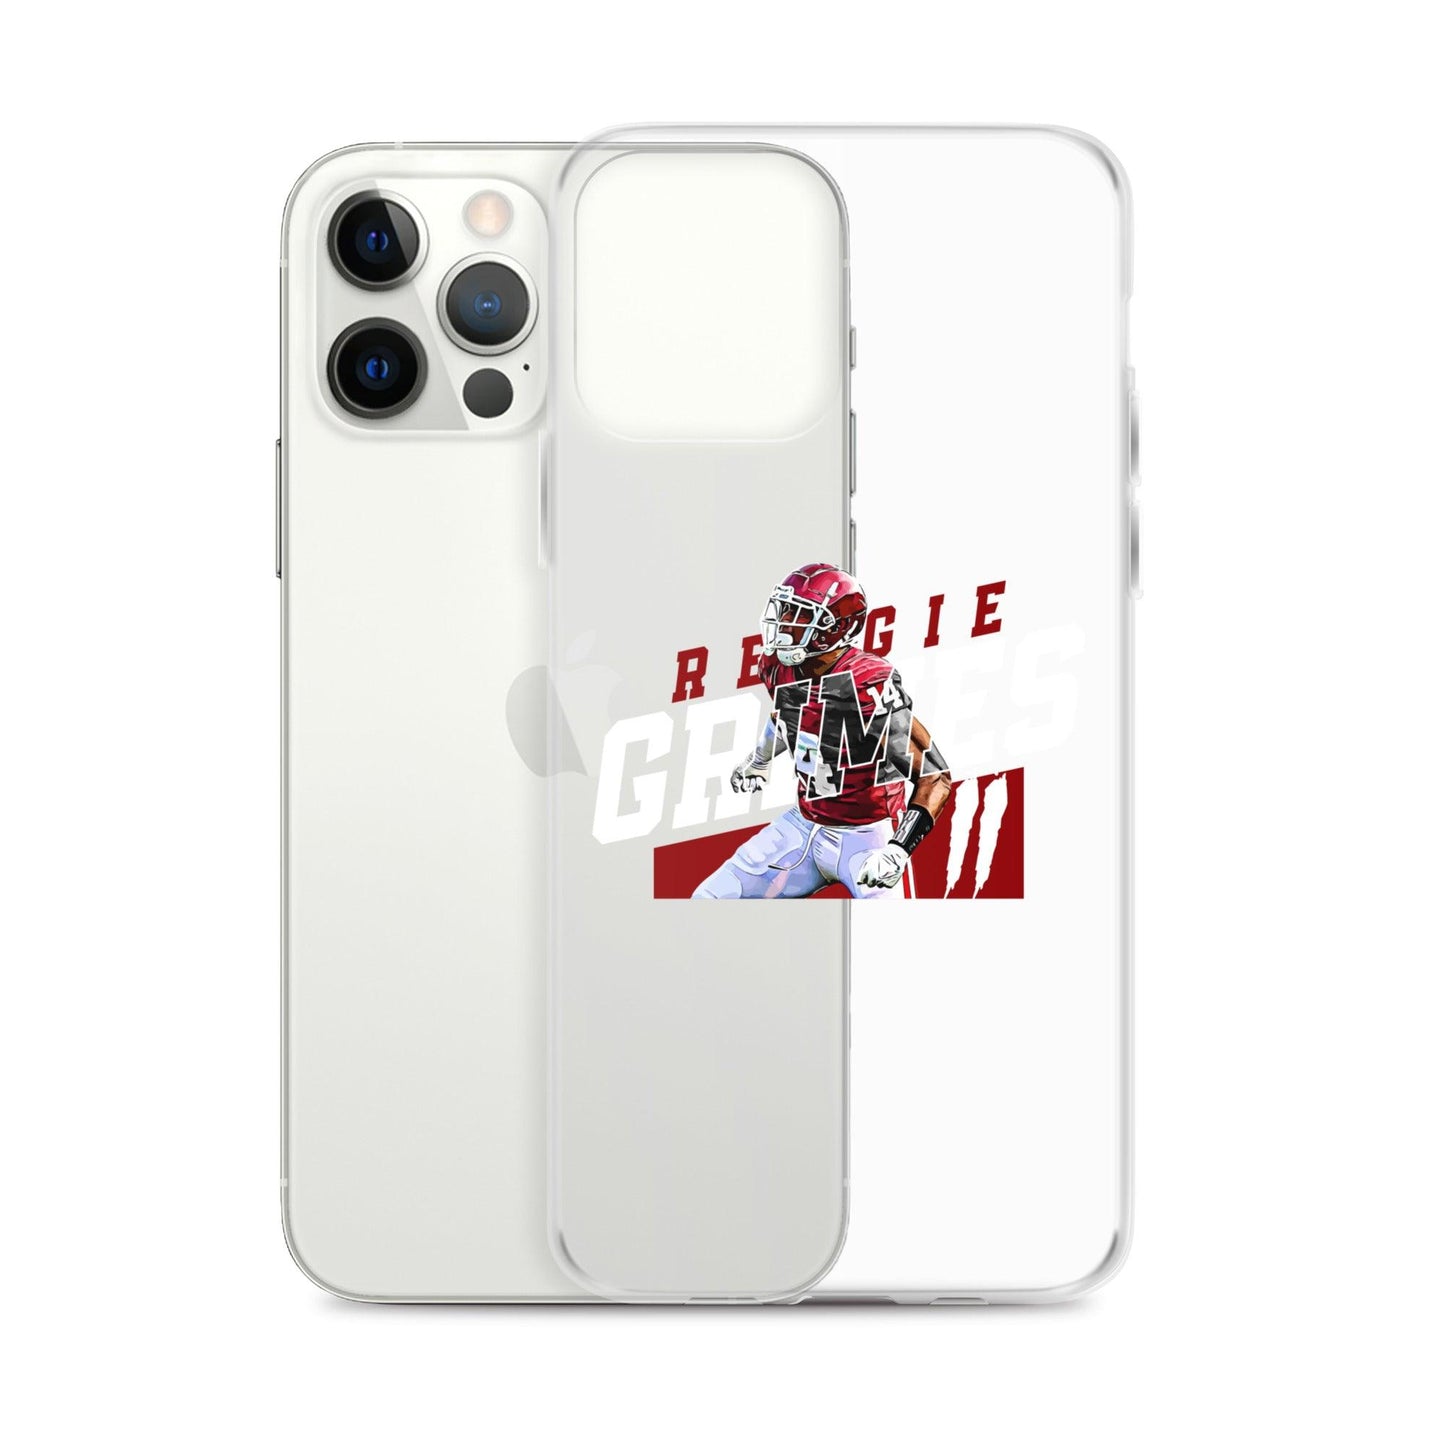 Reggie Grimes II "Gametime" iPhone Case - Fan Arch